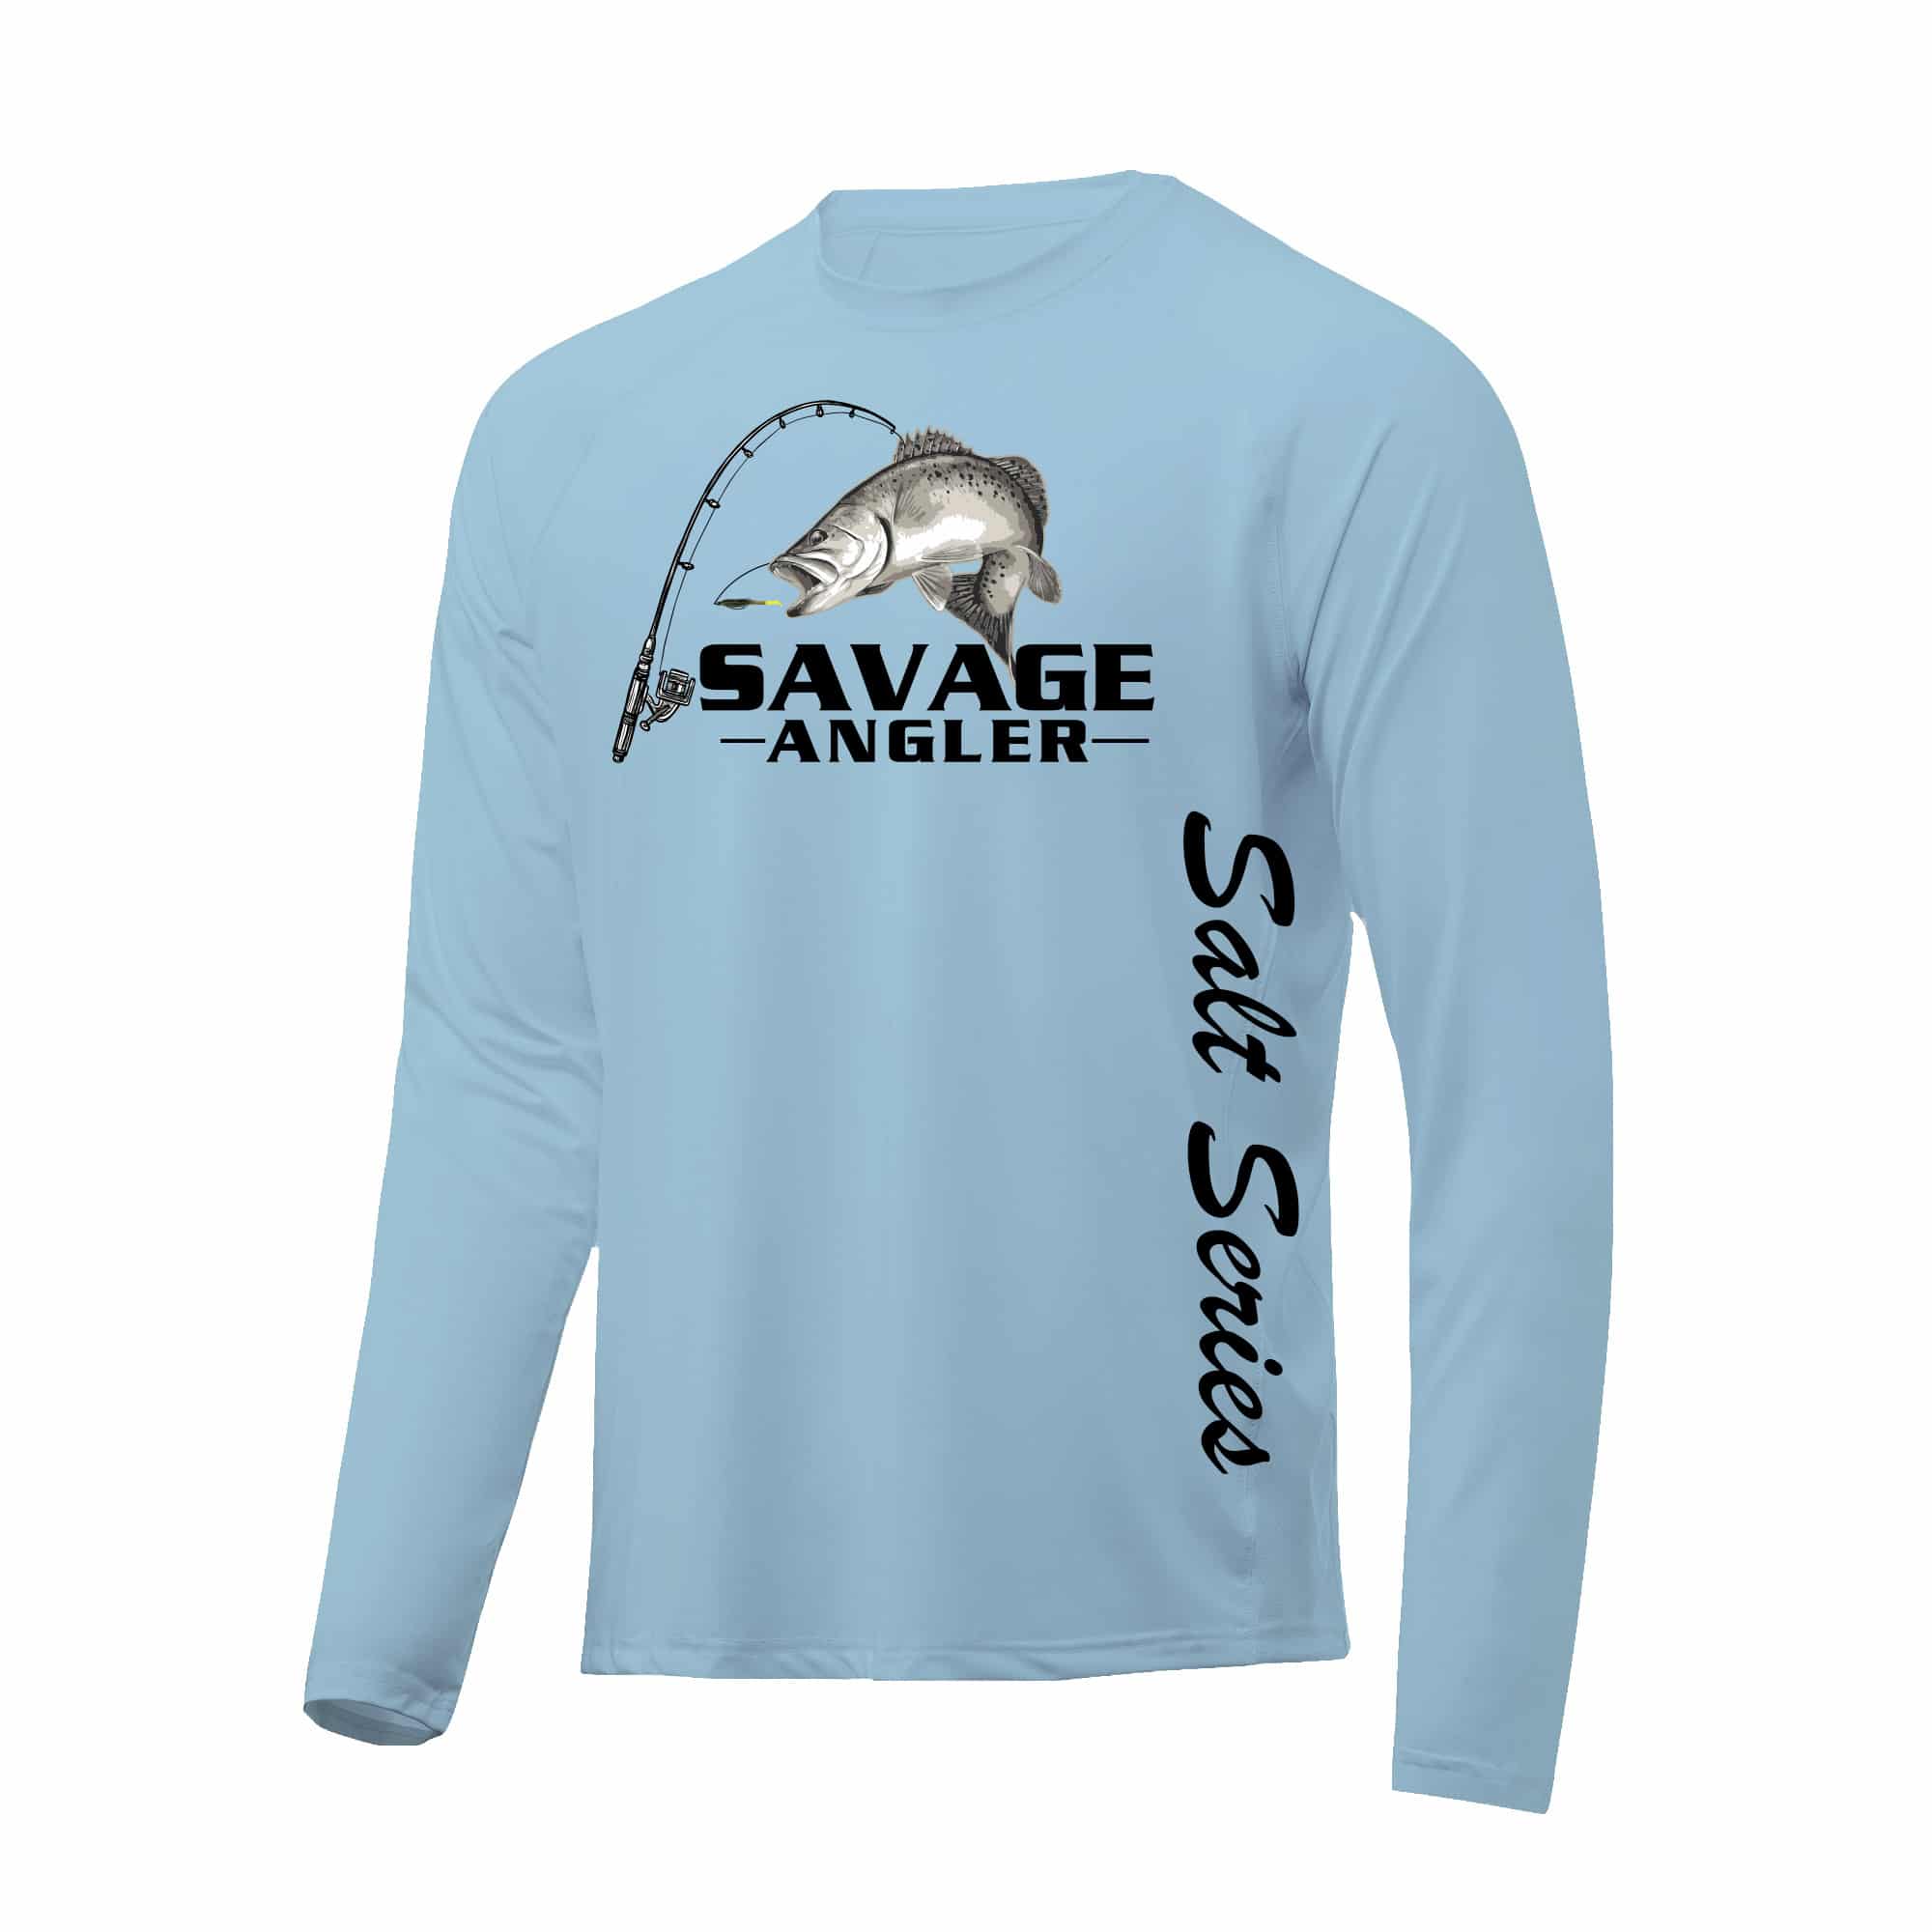 https://savageangler.com/wp-content/uploads/2021/06/Savage-Angler-Salt-Series-Speckled-Trout_Sky_Blue.jpg